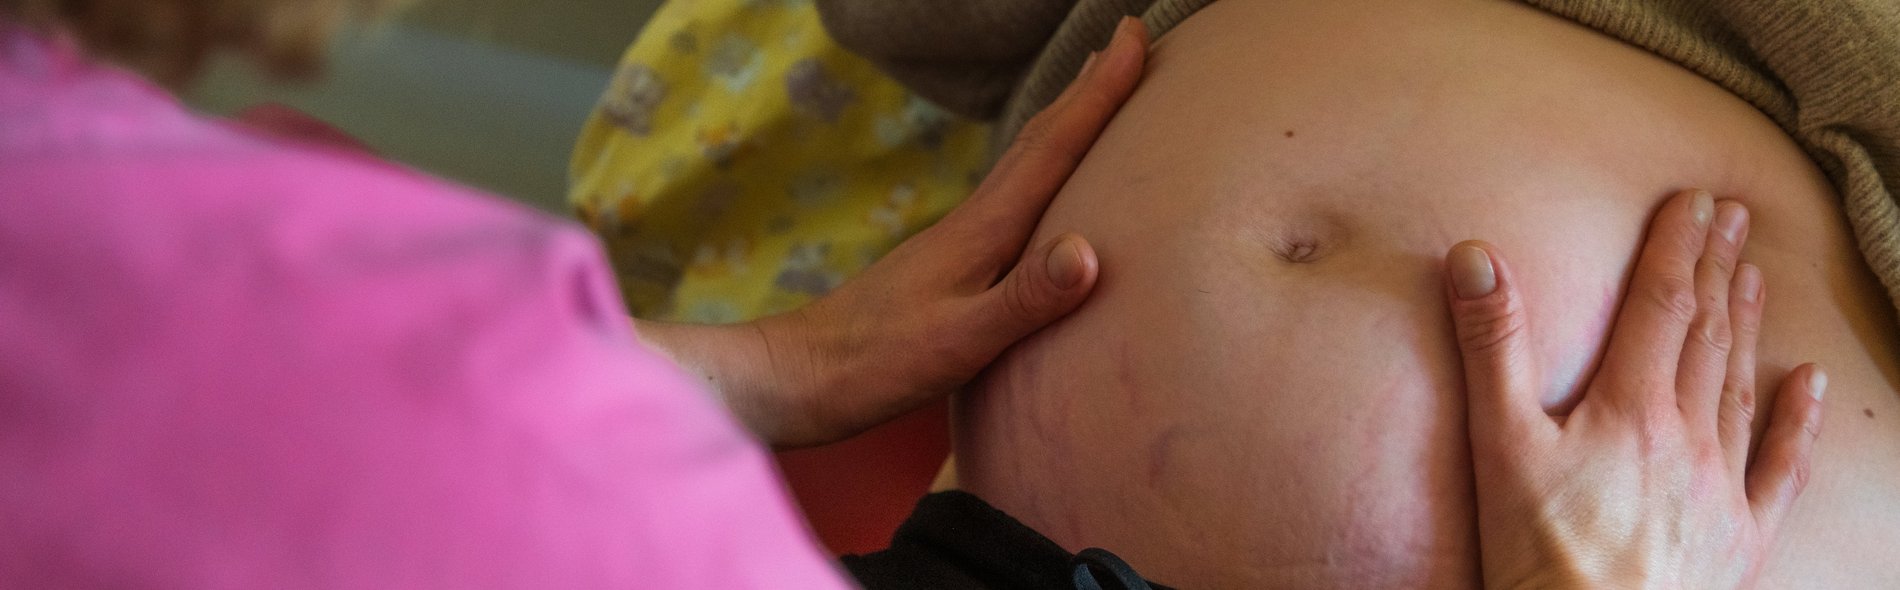 Bildausschnitt: Hebamme tastet den Bauch einer schwangeren Frau ab. Symbolbild für den hebammengeleiteten Kreißsaal am Sana Klinikum Borna 